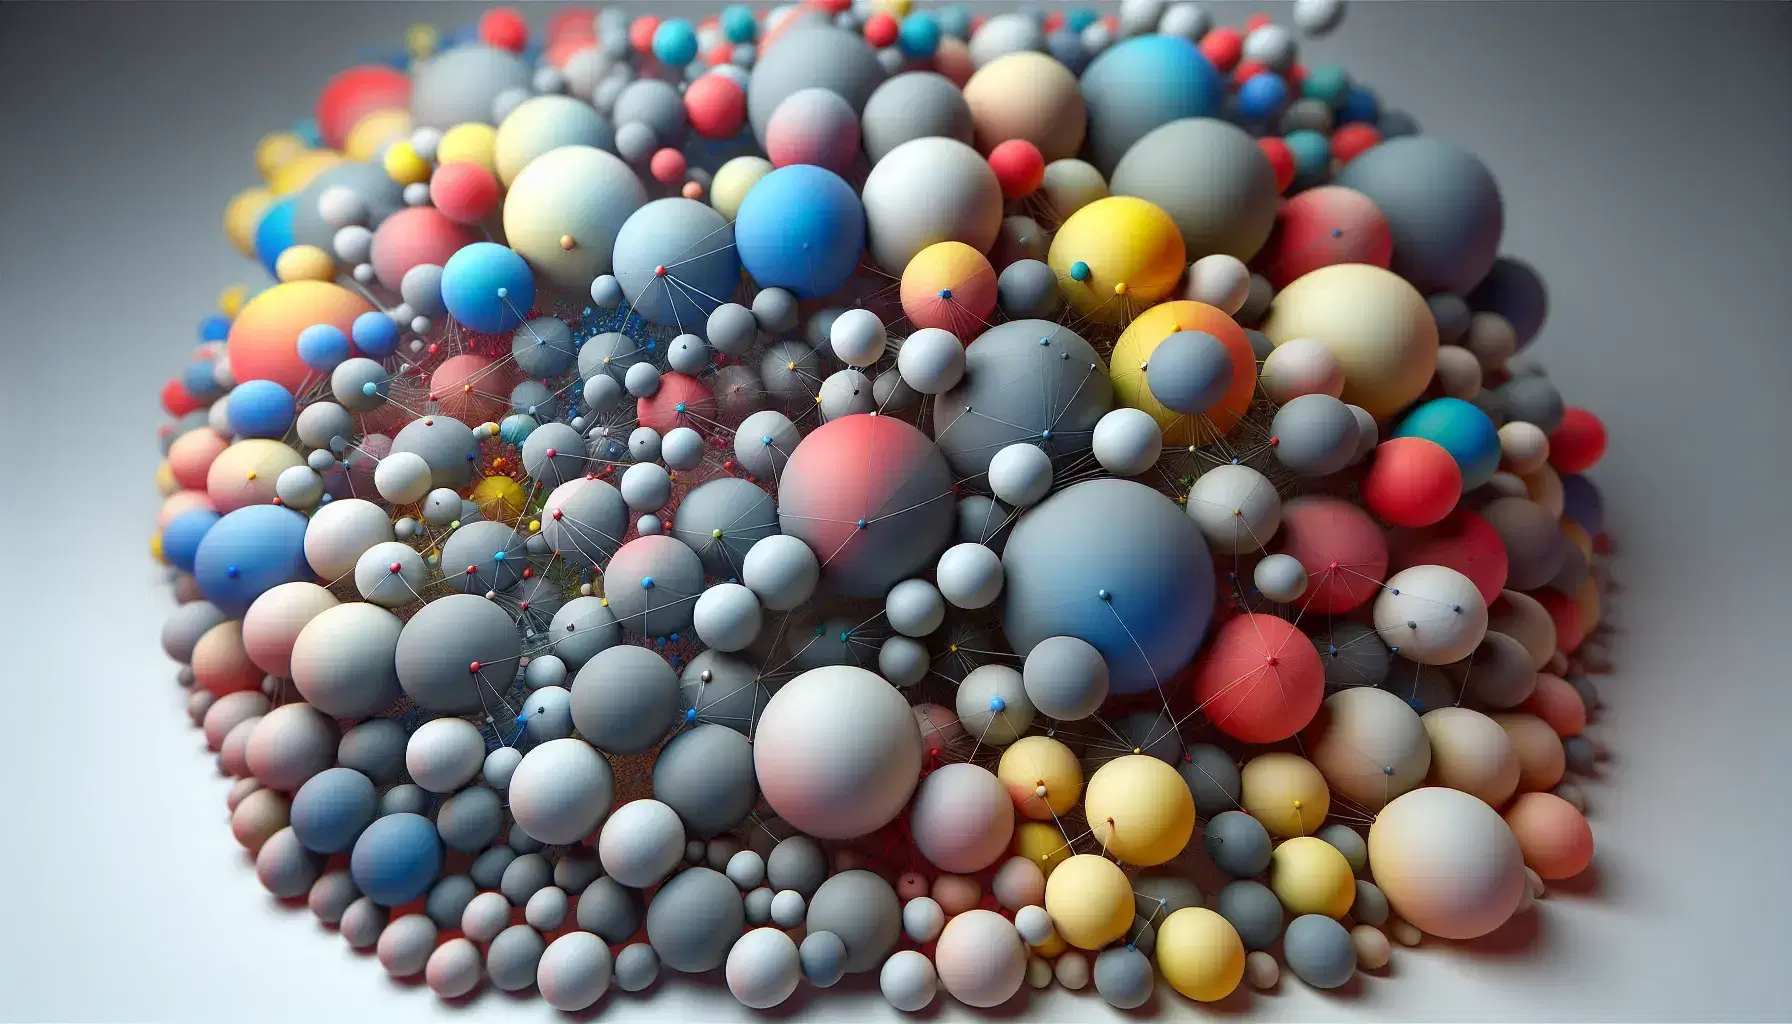 Esferas flotantes en 3D de varios tamaños y colores con líneas conectándolas, evocando una estructura molecular en espacio indefinido.